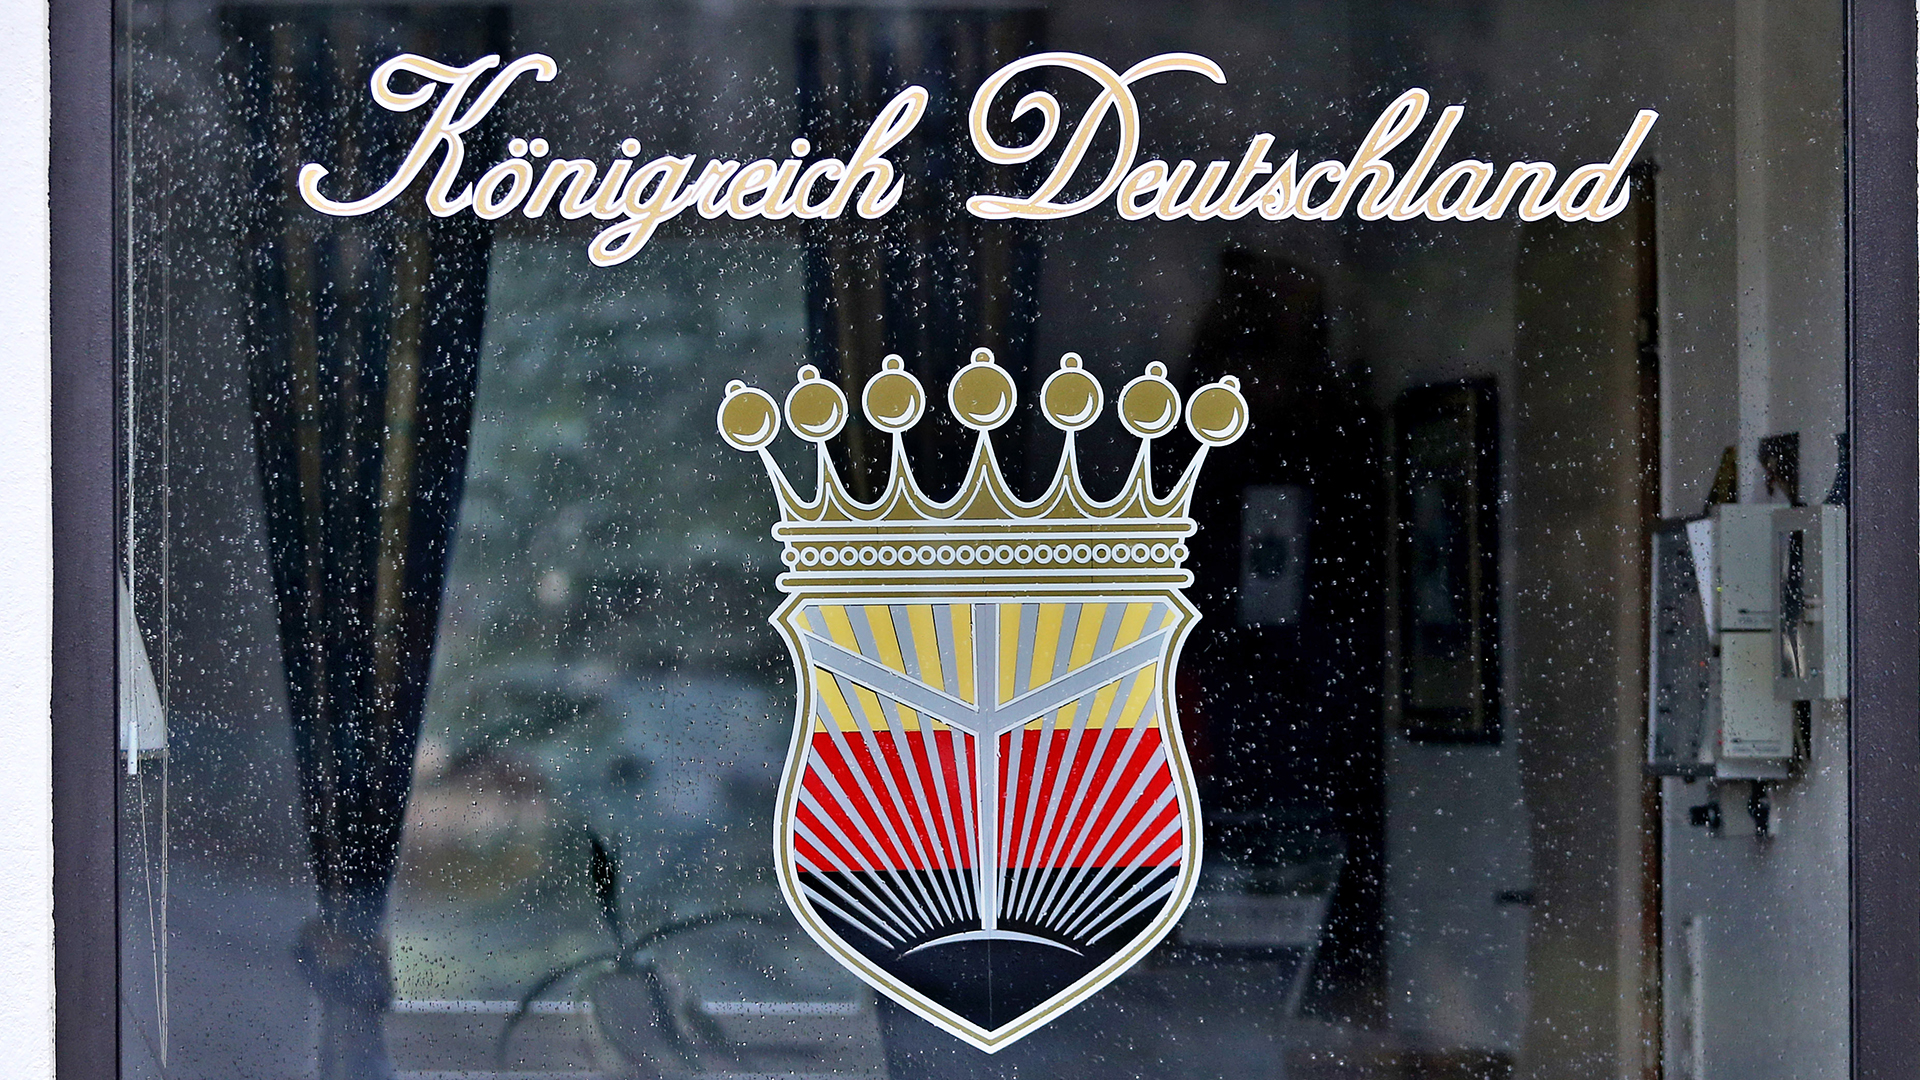 Schriftzug des "Königreichs Deutschland" auf einen Fenster | picture alliance / Jan Woitas/dp